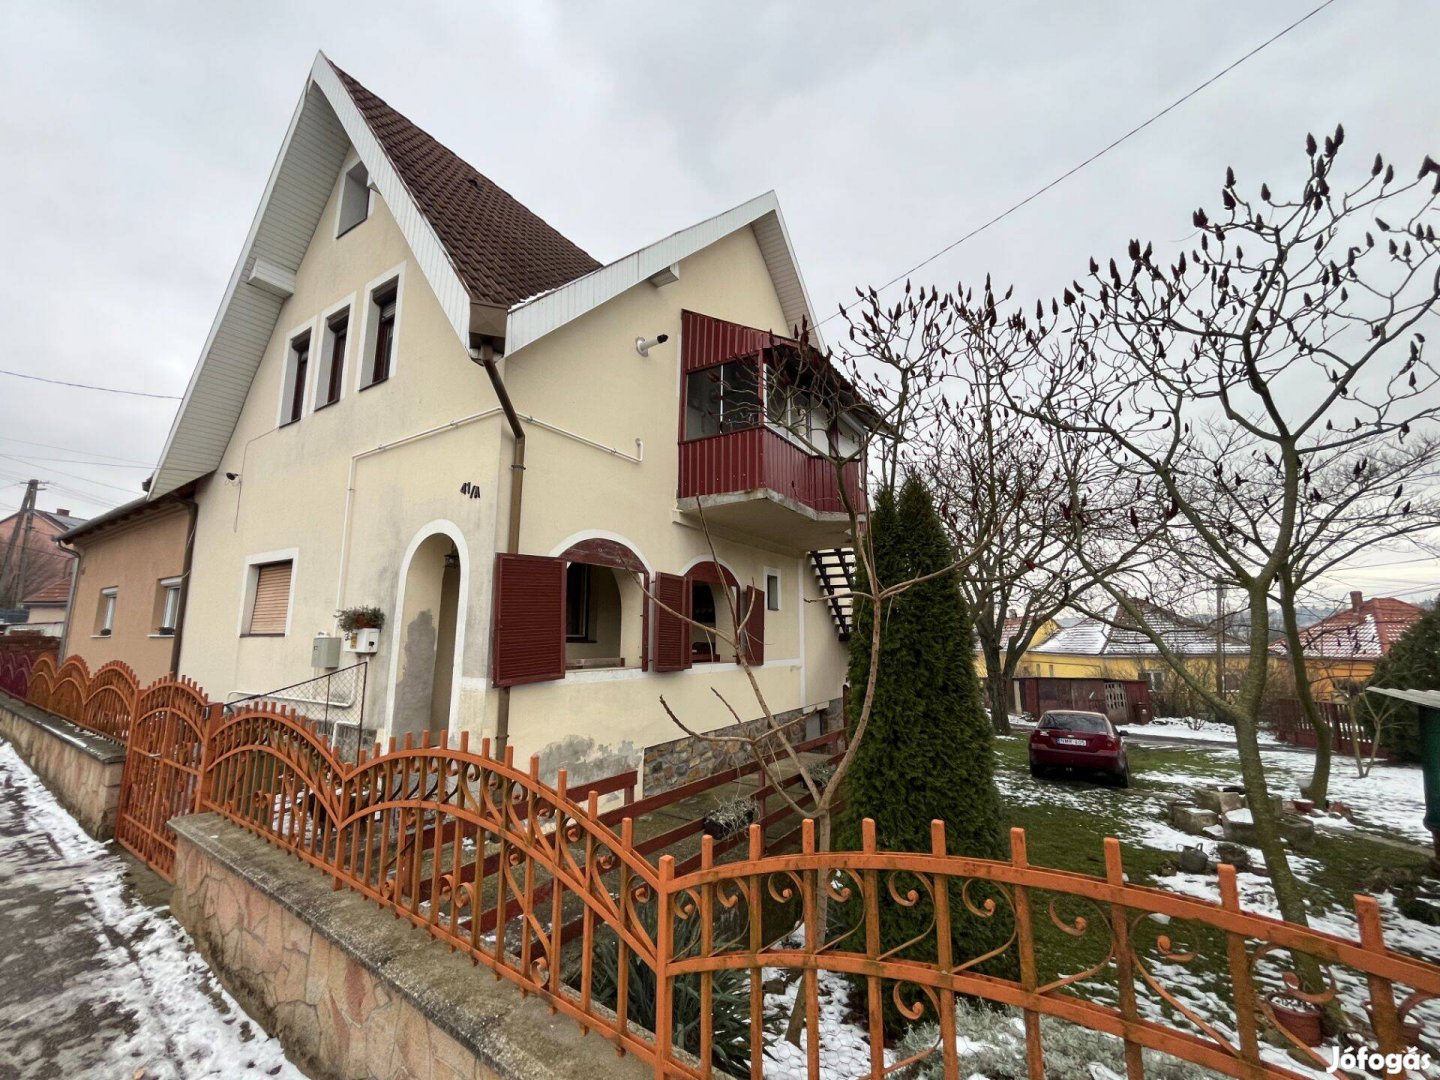 Eladó családi ház Pécs-Somogyban!